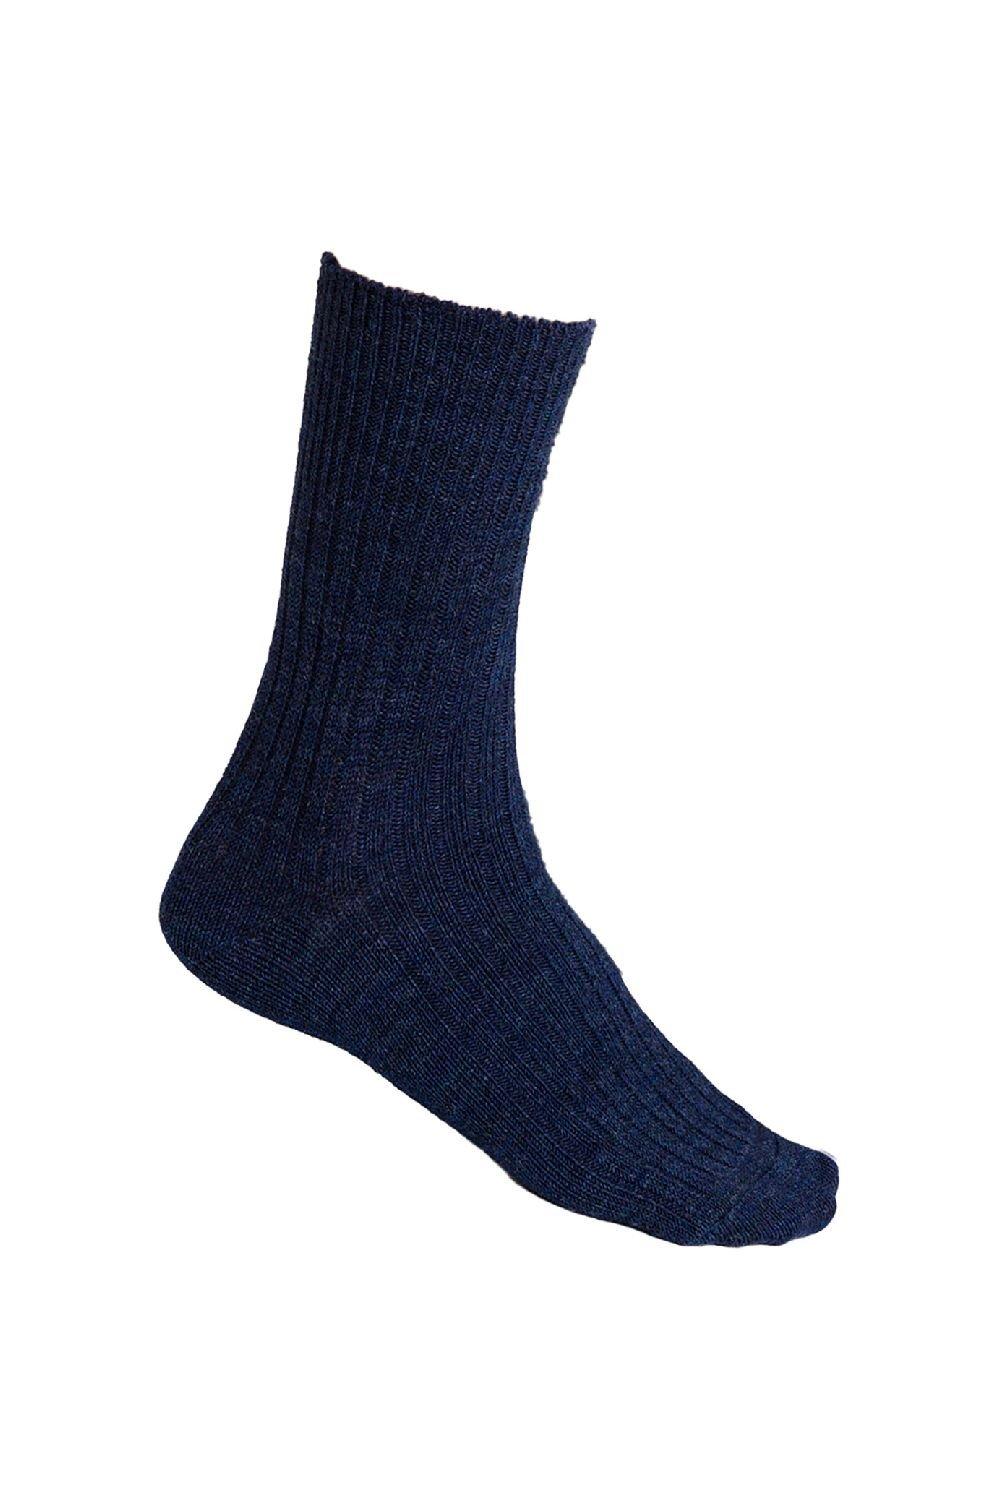 Alpaca Socks for Winter Knitted Crew Boot Socks